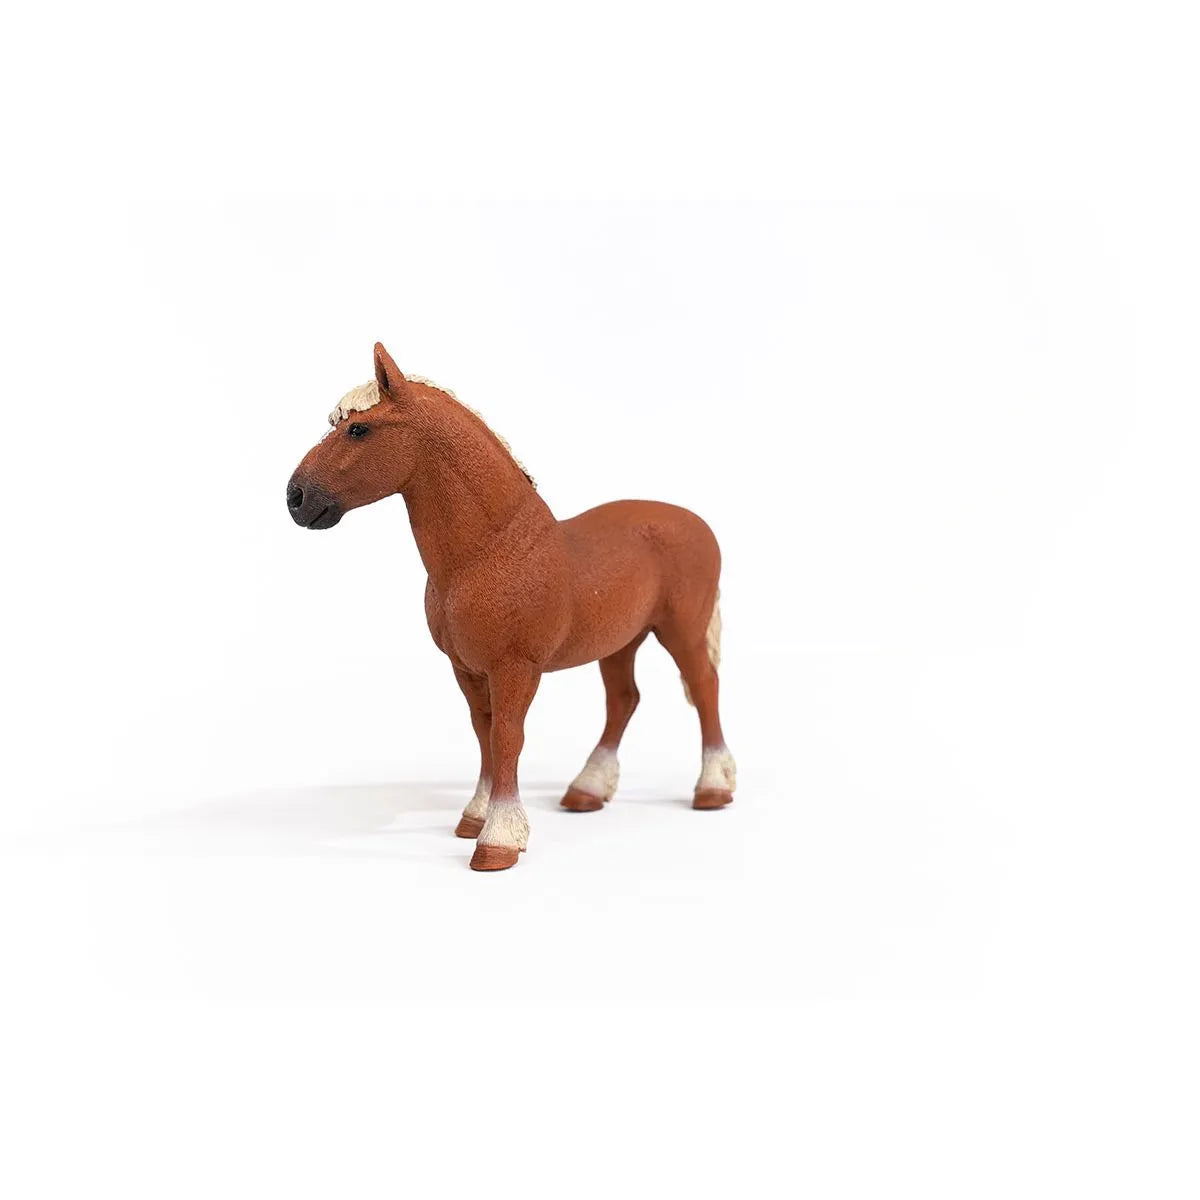 Schleich Belgian Broodmare Draft horse 13941 | 30% OFF | Children of the Wild